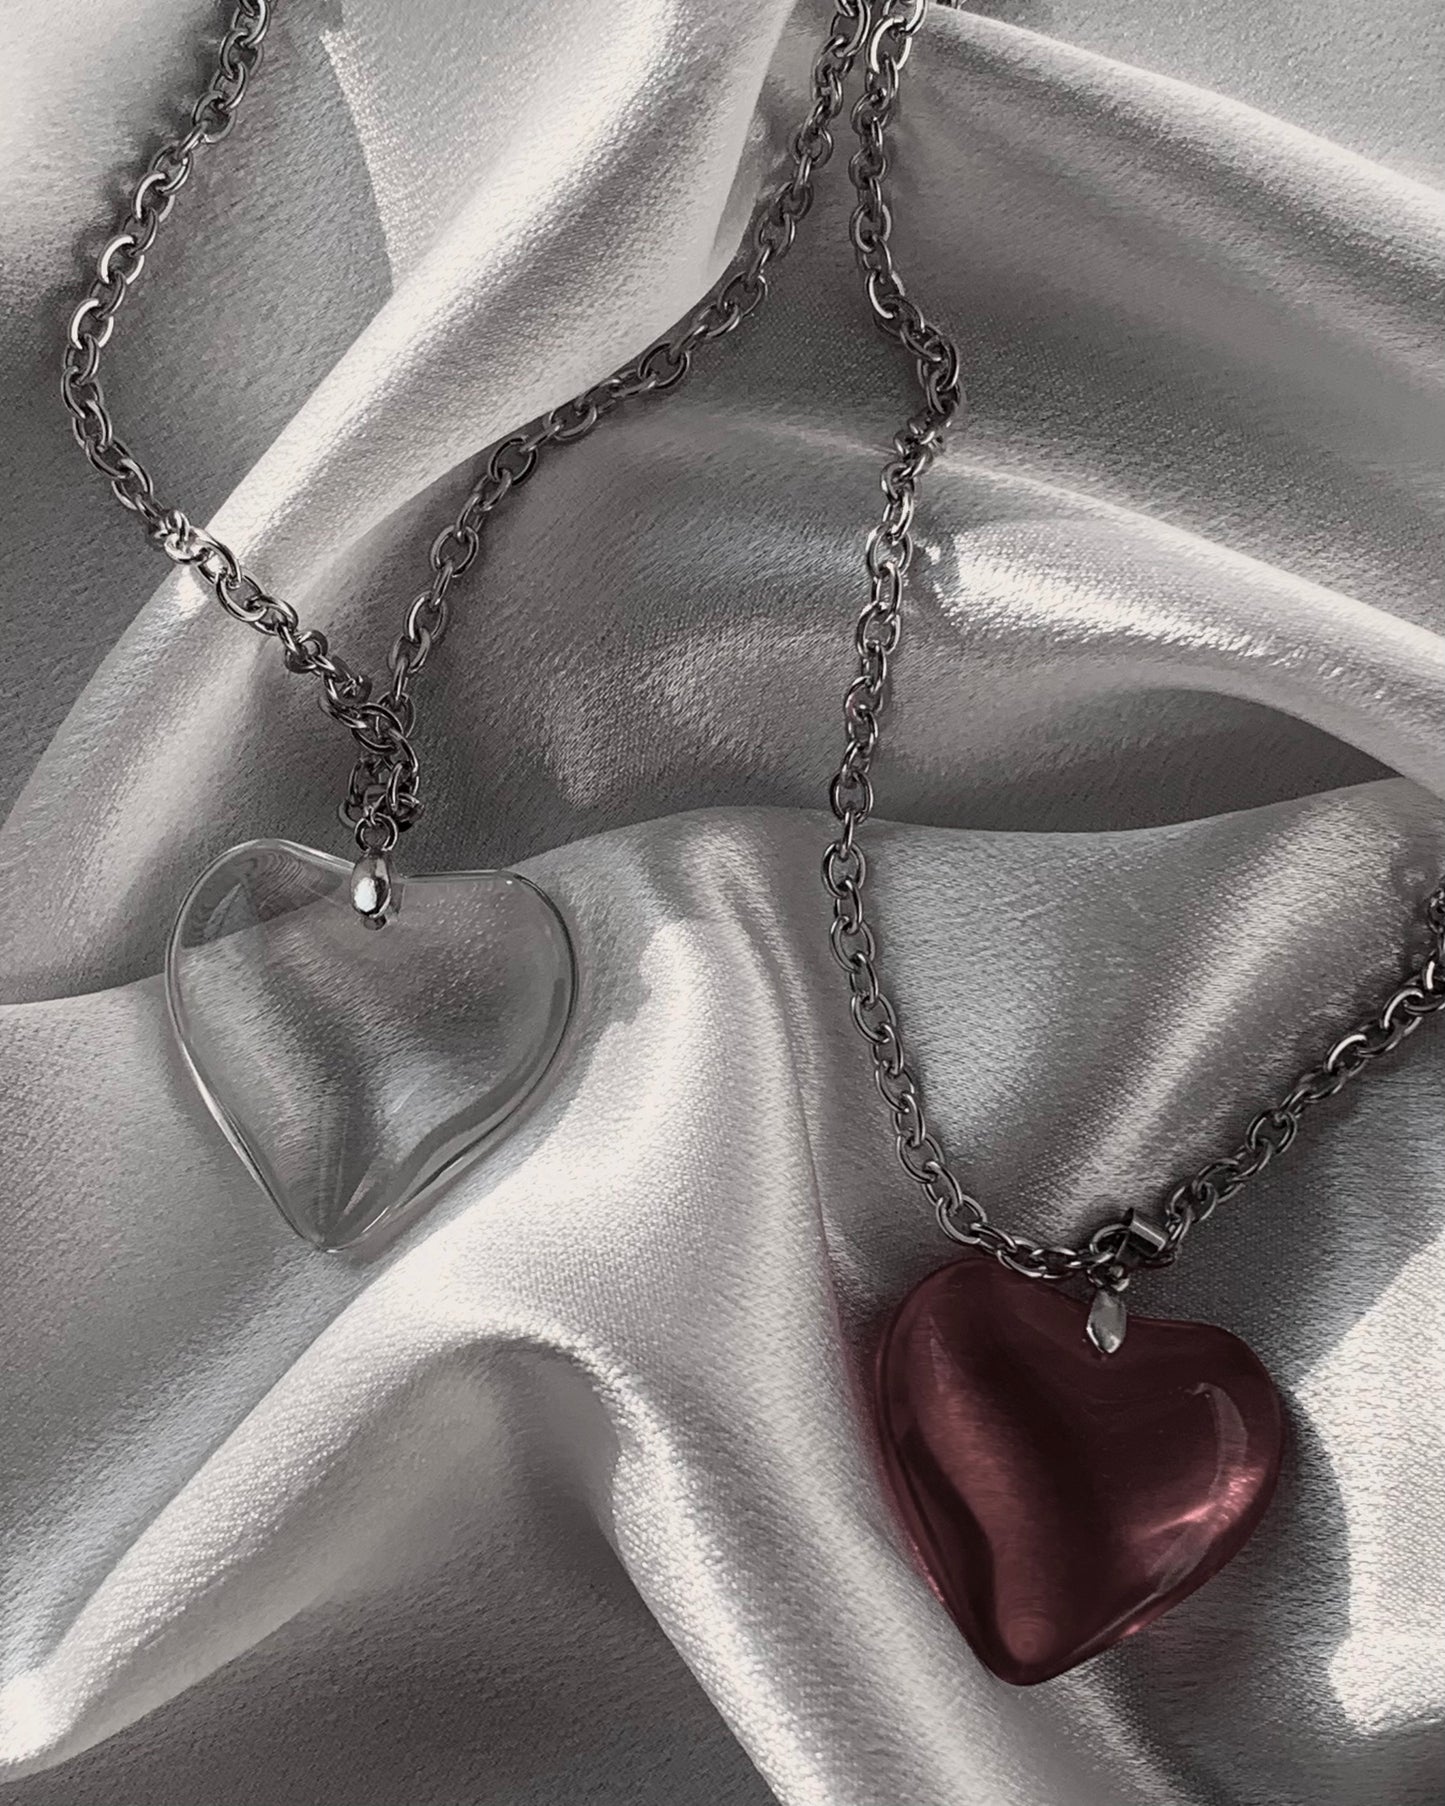 Forsaken Heart necklace